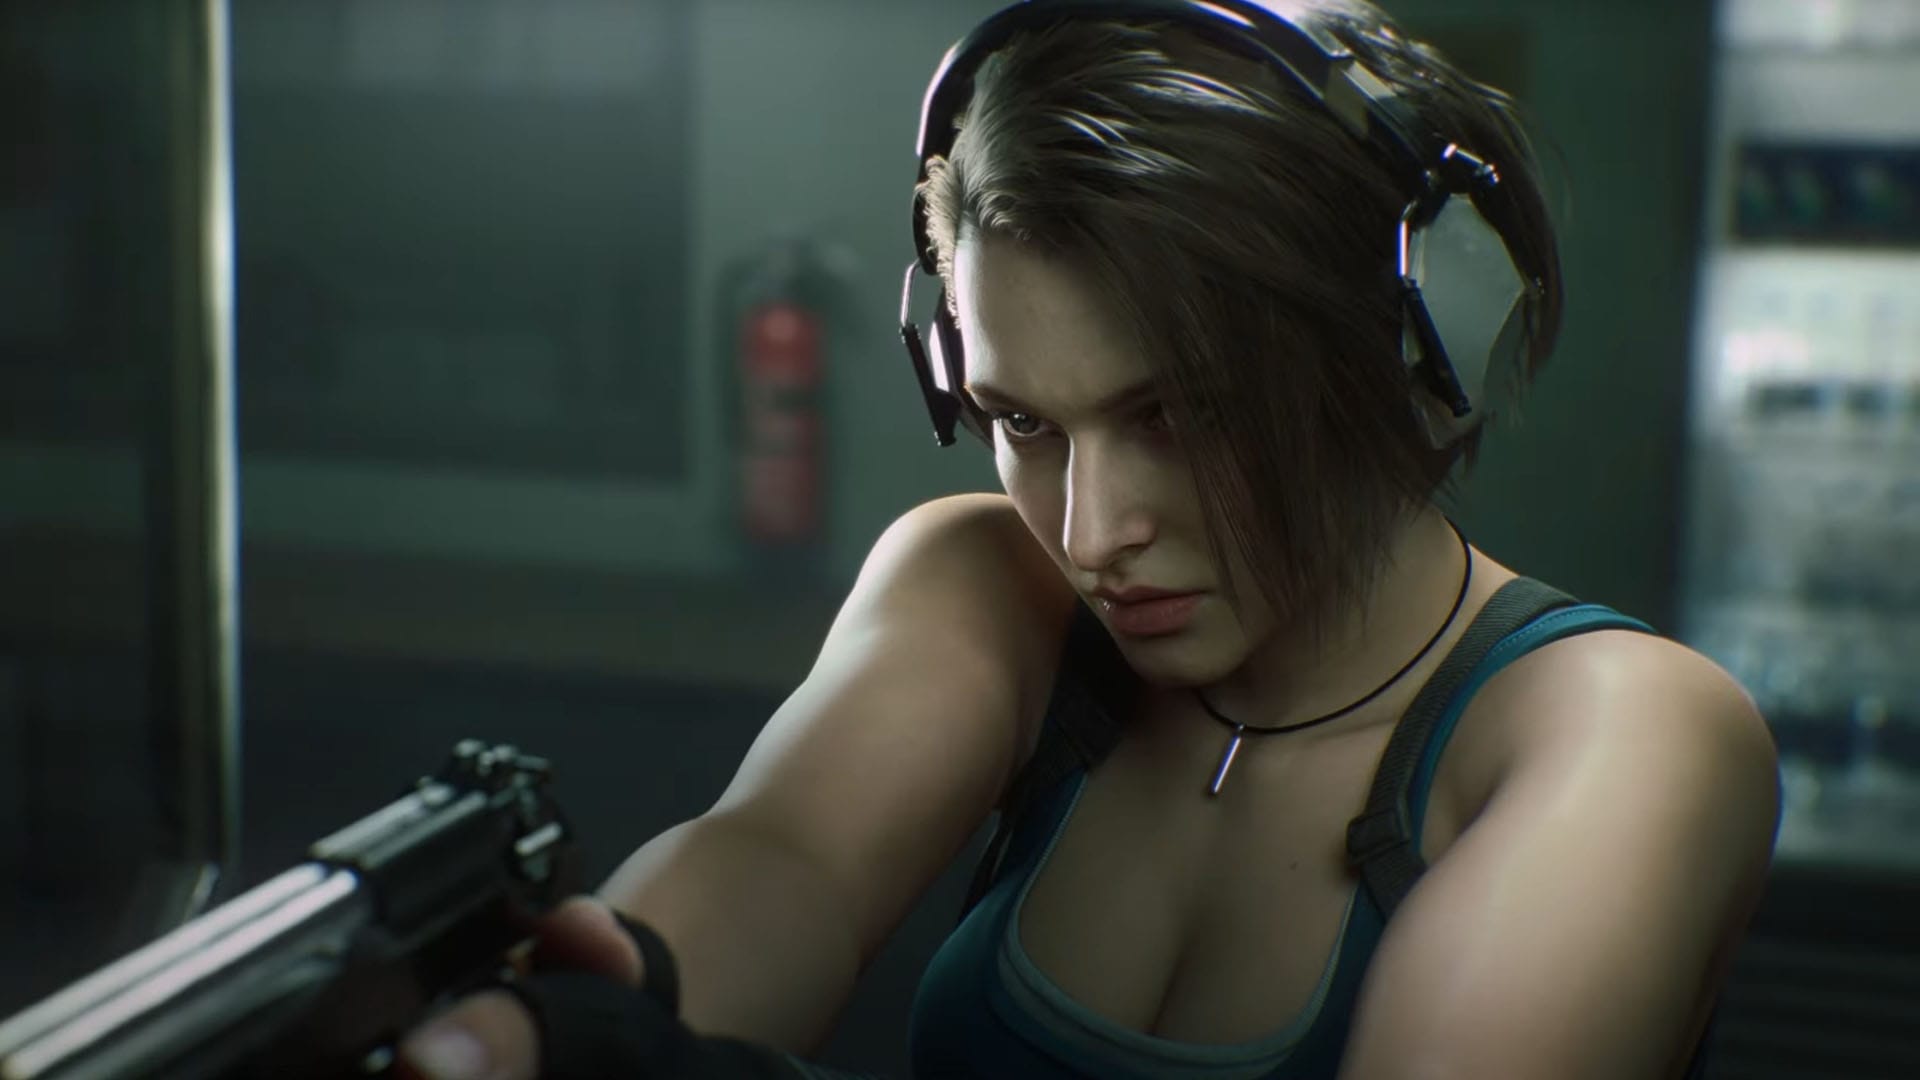 Resident Evil 3, Announcement Trailer